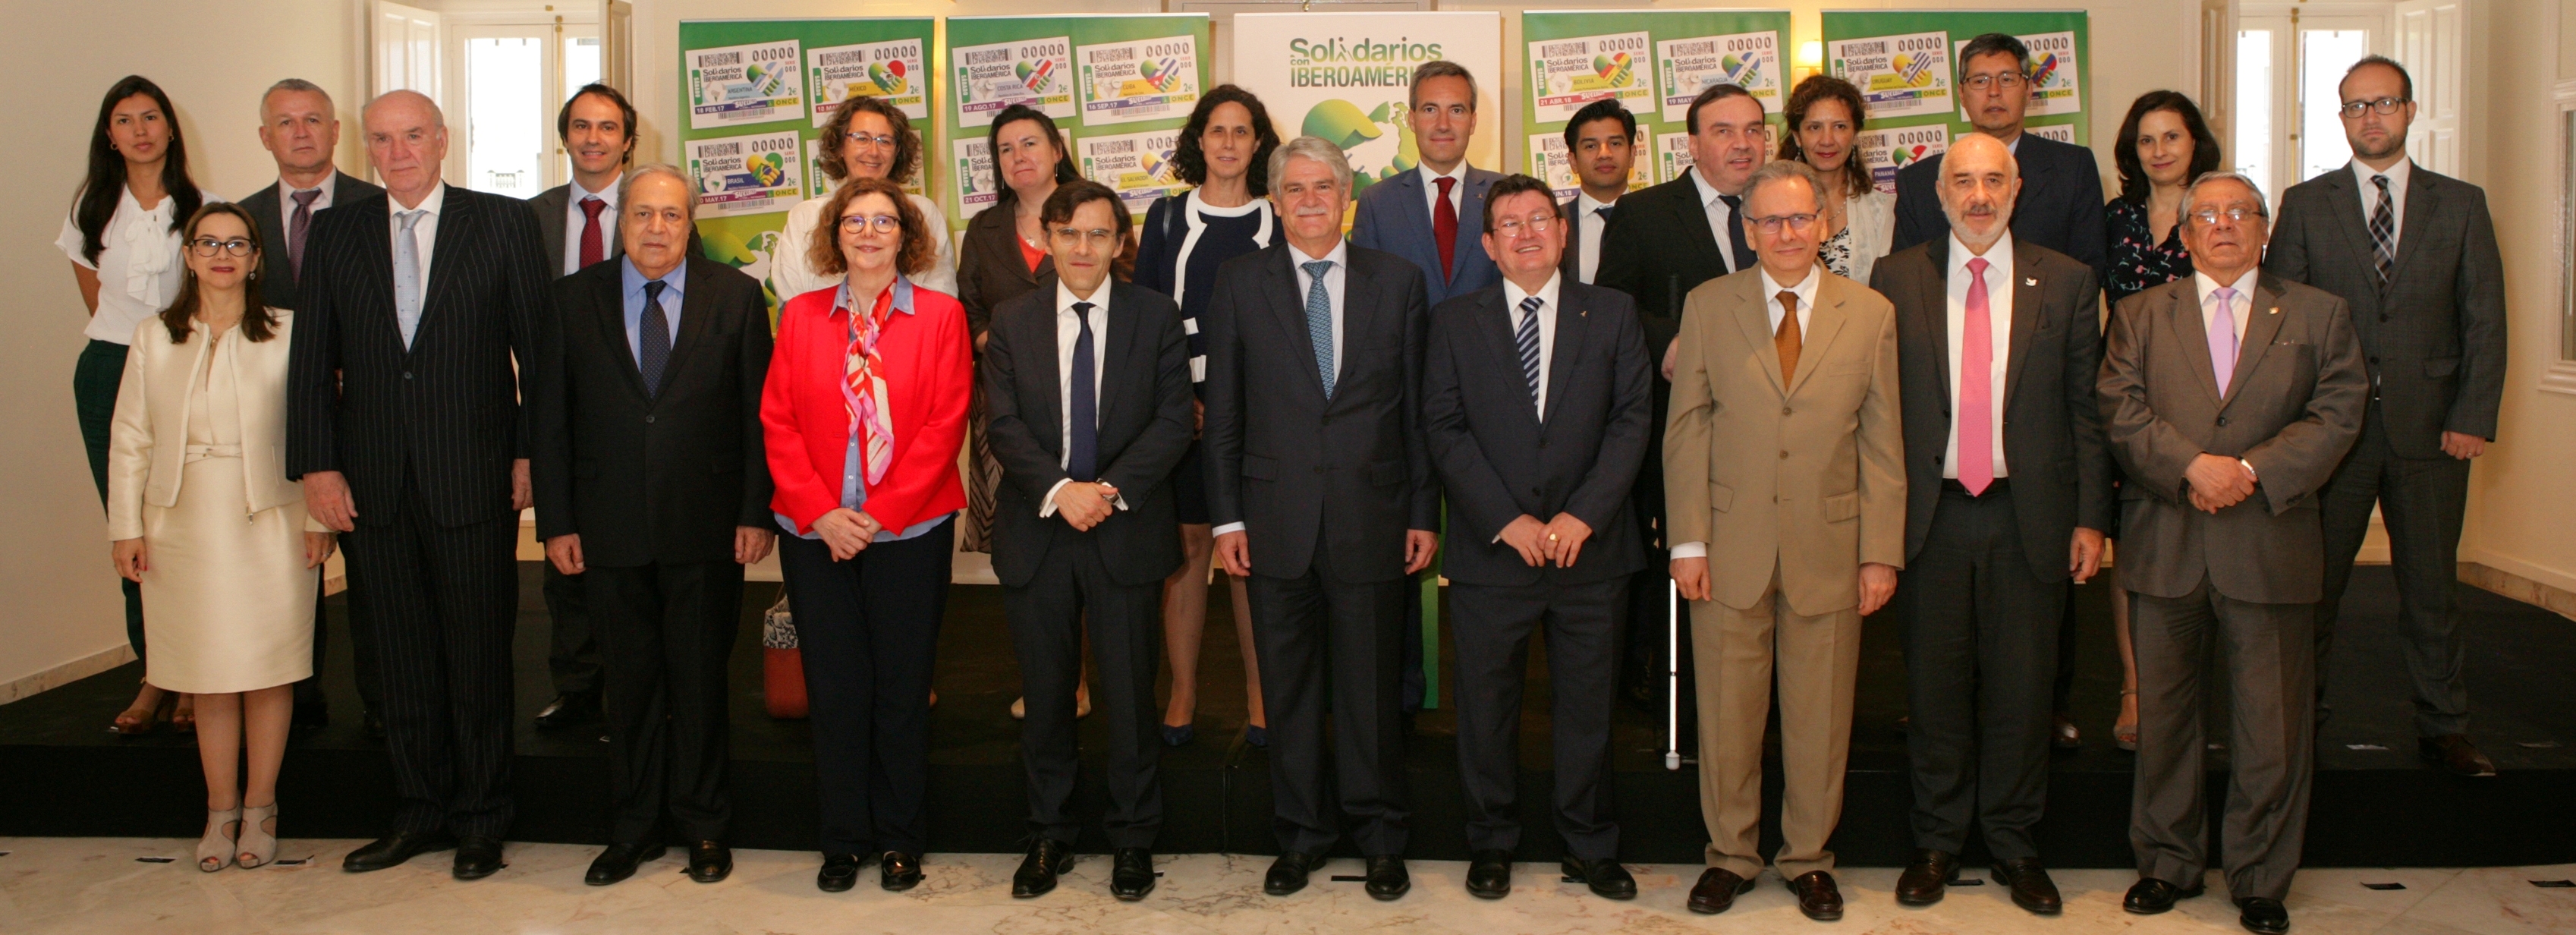 Embajadores iberoamericanos, junto al ministro de Exteriores de España, Alfonso Dastis y responsables de la ONCE en el acto de presentación del Proyecto Solidarios con Iberoamérica